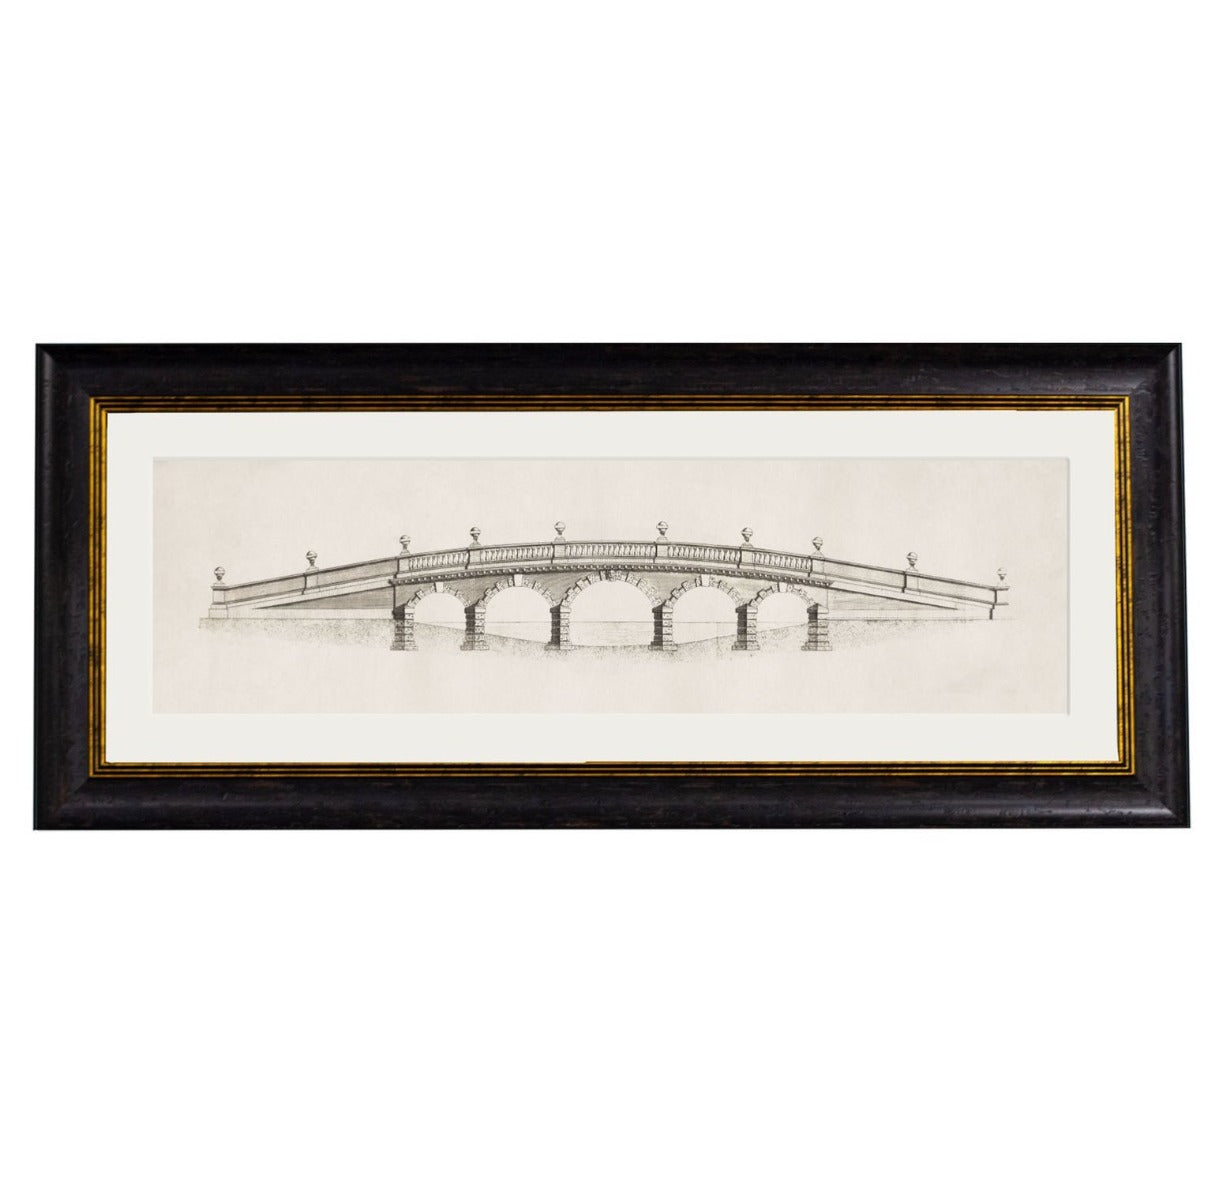 C.1756 Architectural Elevations of Bridges Framed Prints